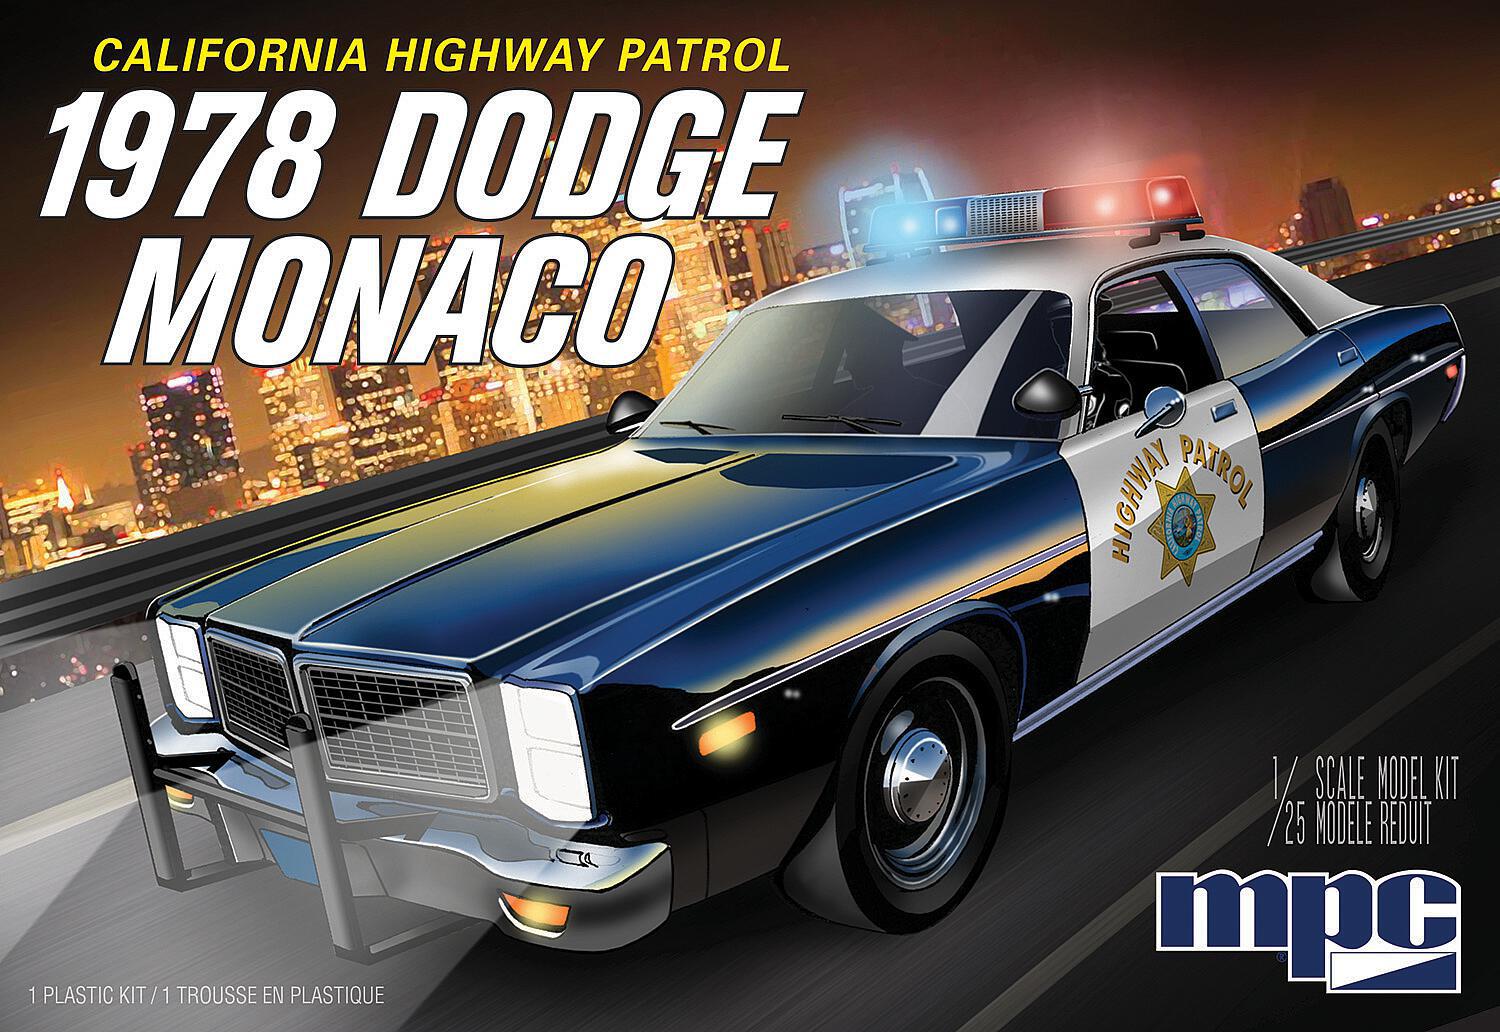 dodge monaco police car 5/5 5978er Dodge Monaco, Police Car CHP